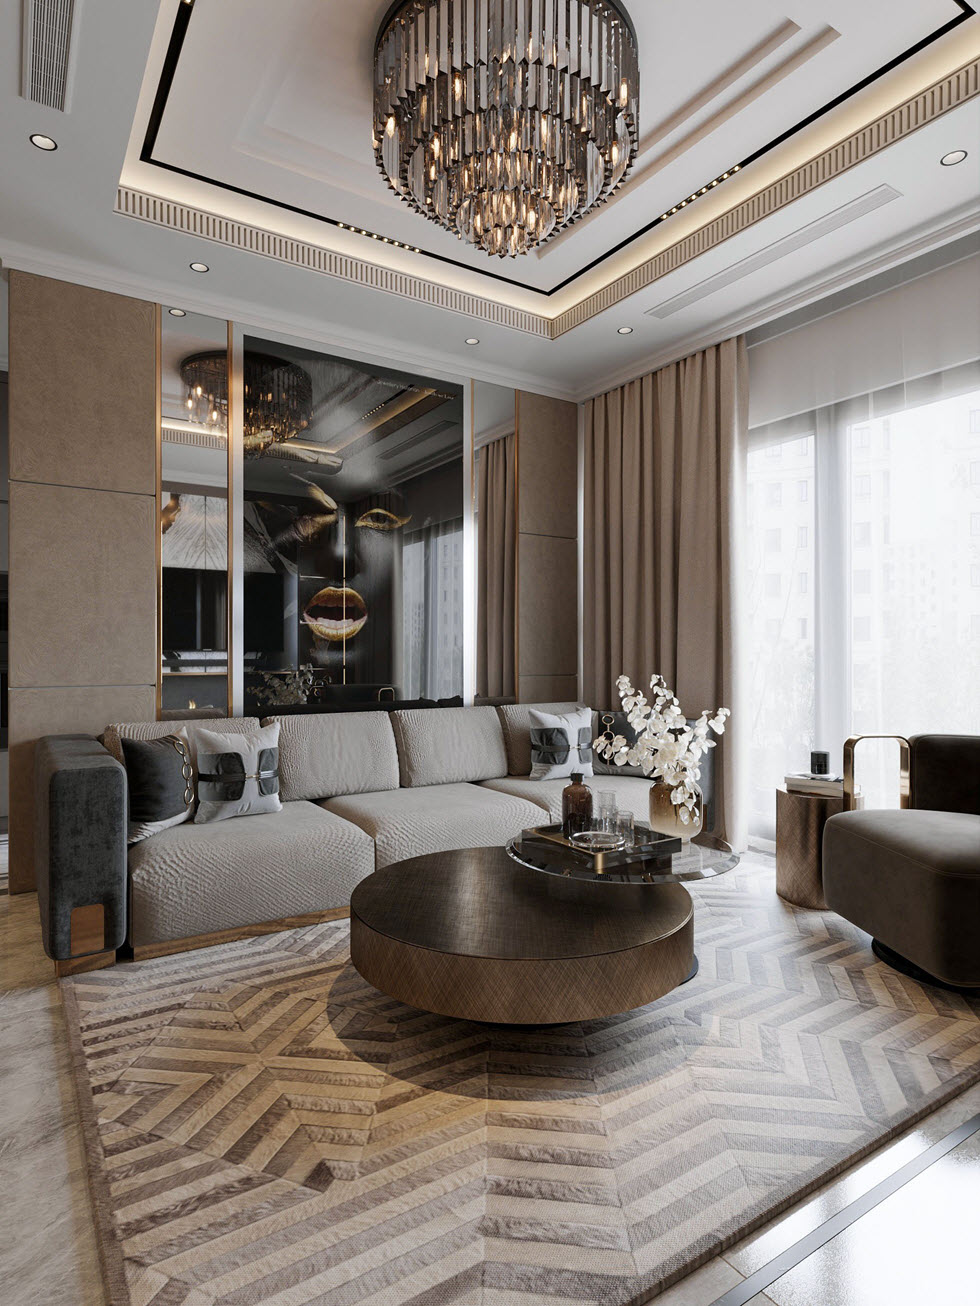 Kiến trúc sư lựa chọn những món đồ nội thất cao cấp với thiết kế độc đáo, tông màu trung tính thanh lịch. Phòng khách vì thế toát lên sang trọng đúng chất "hạng A".